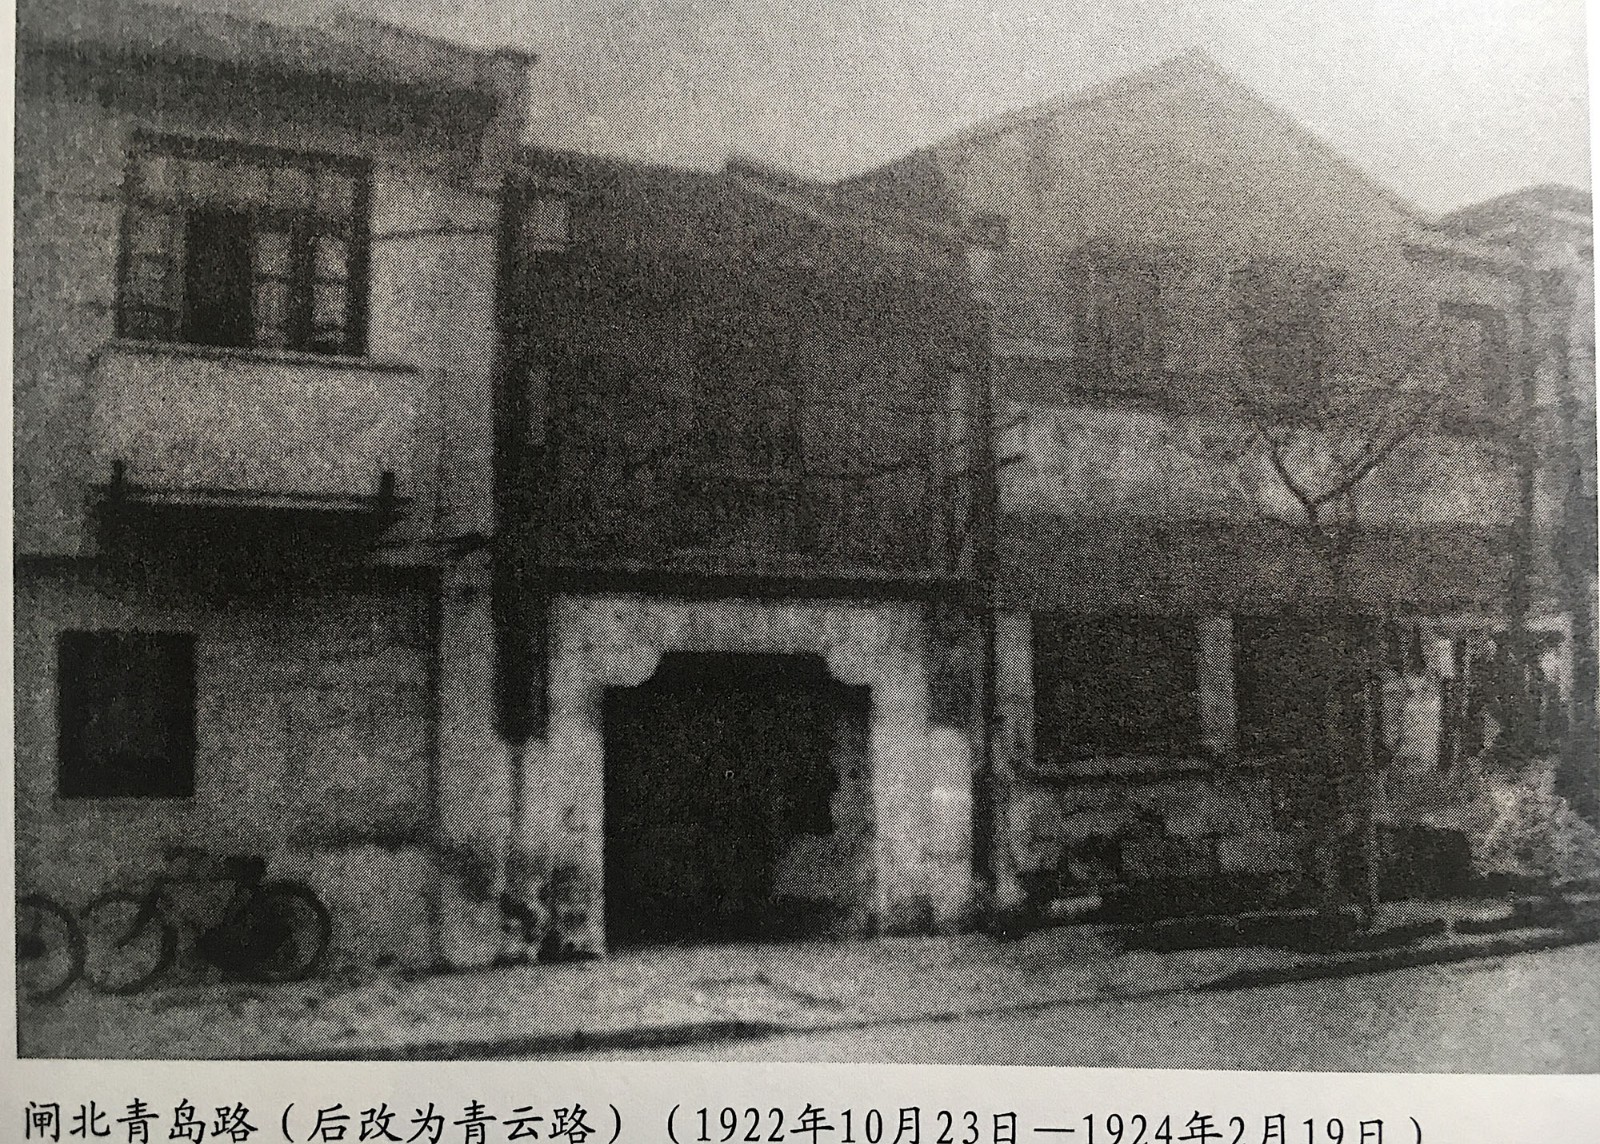 上海大学青岛路（后改名青云路）时期.jpeg